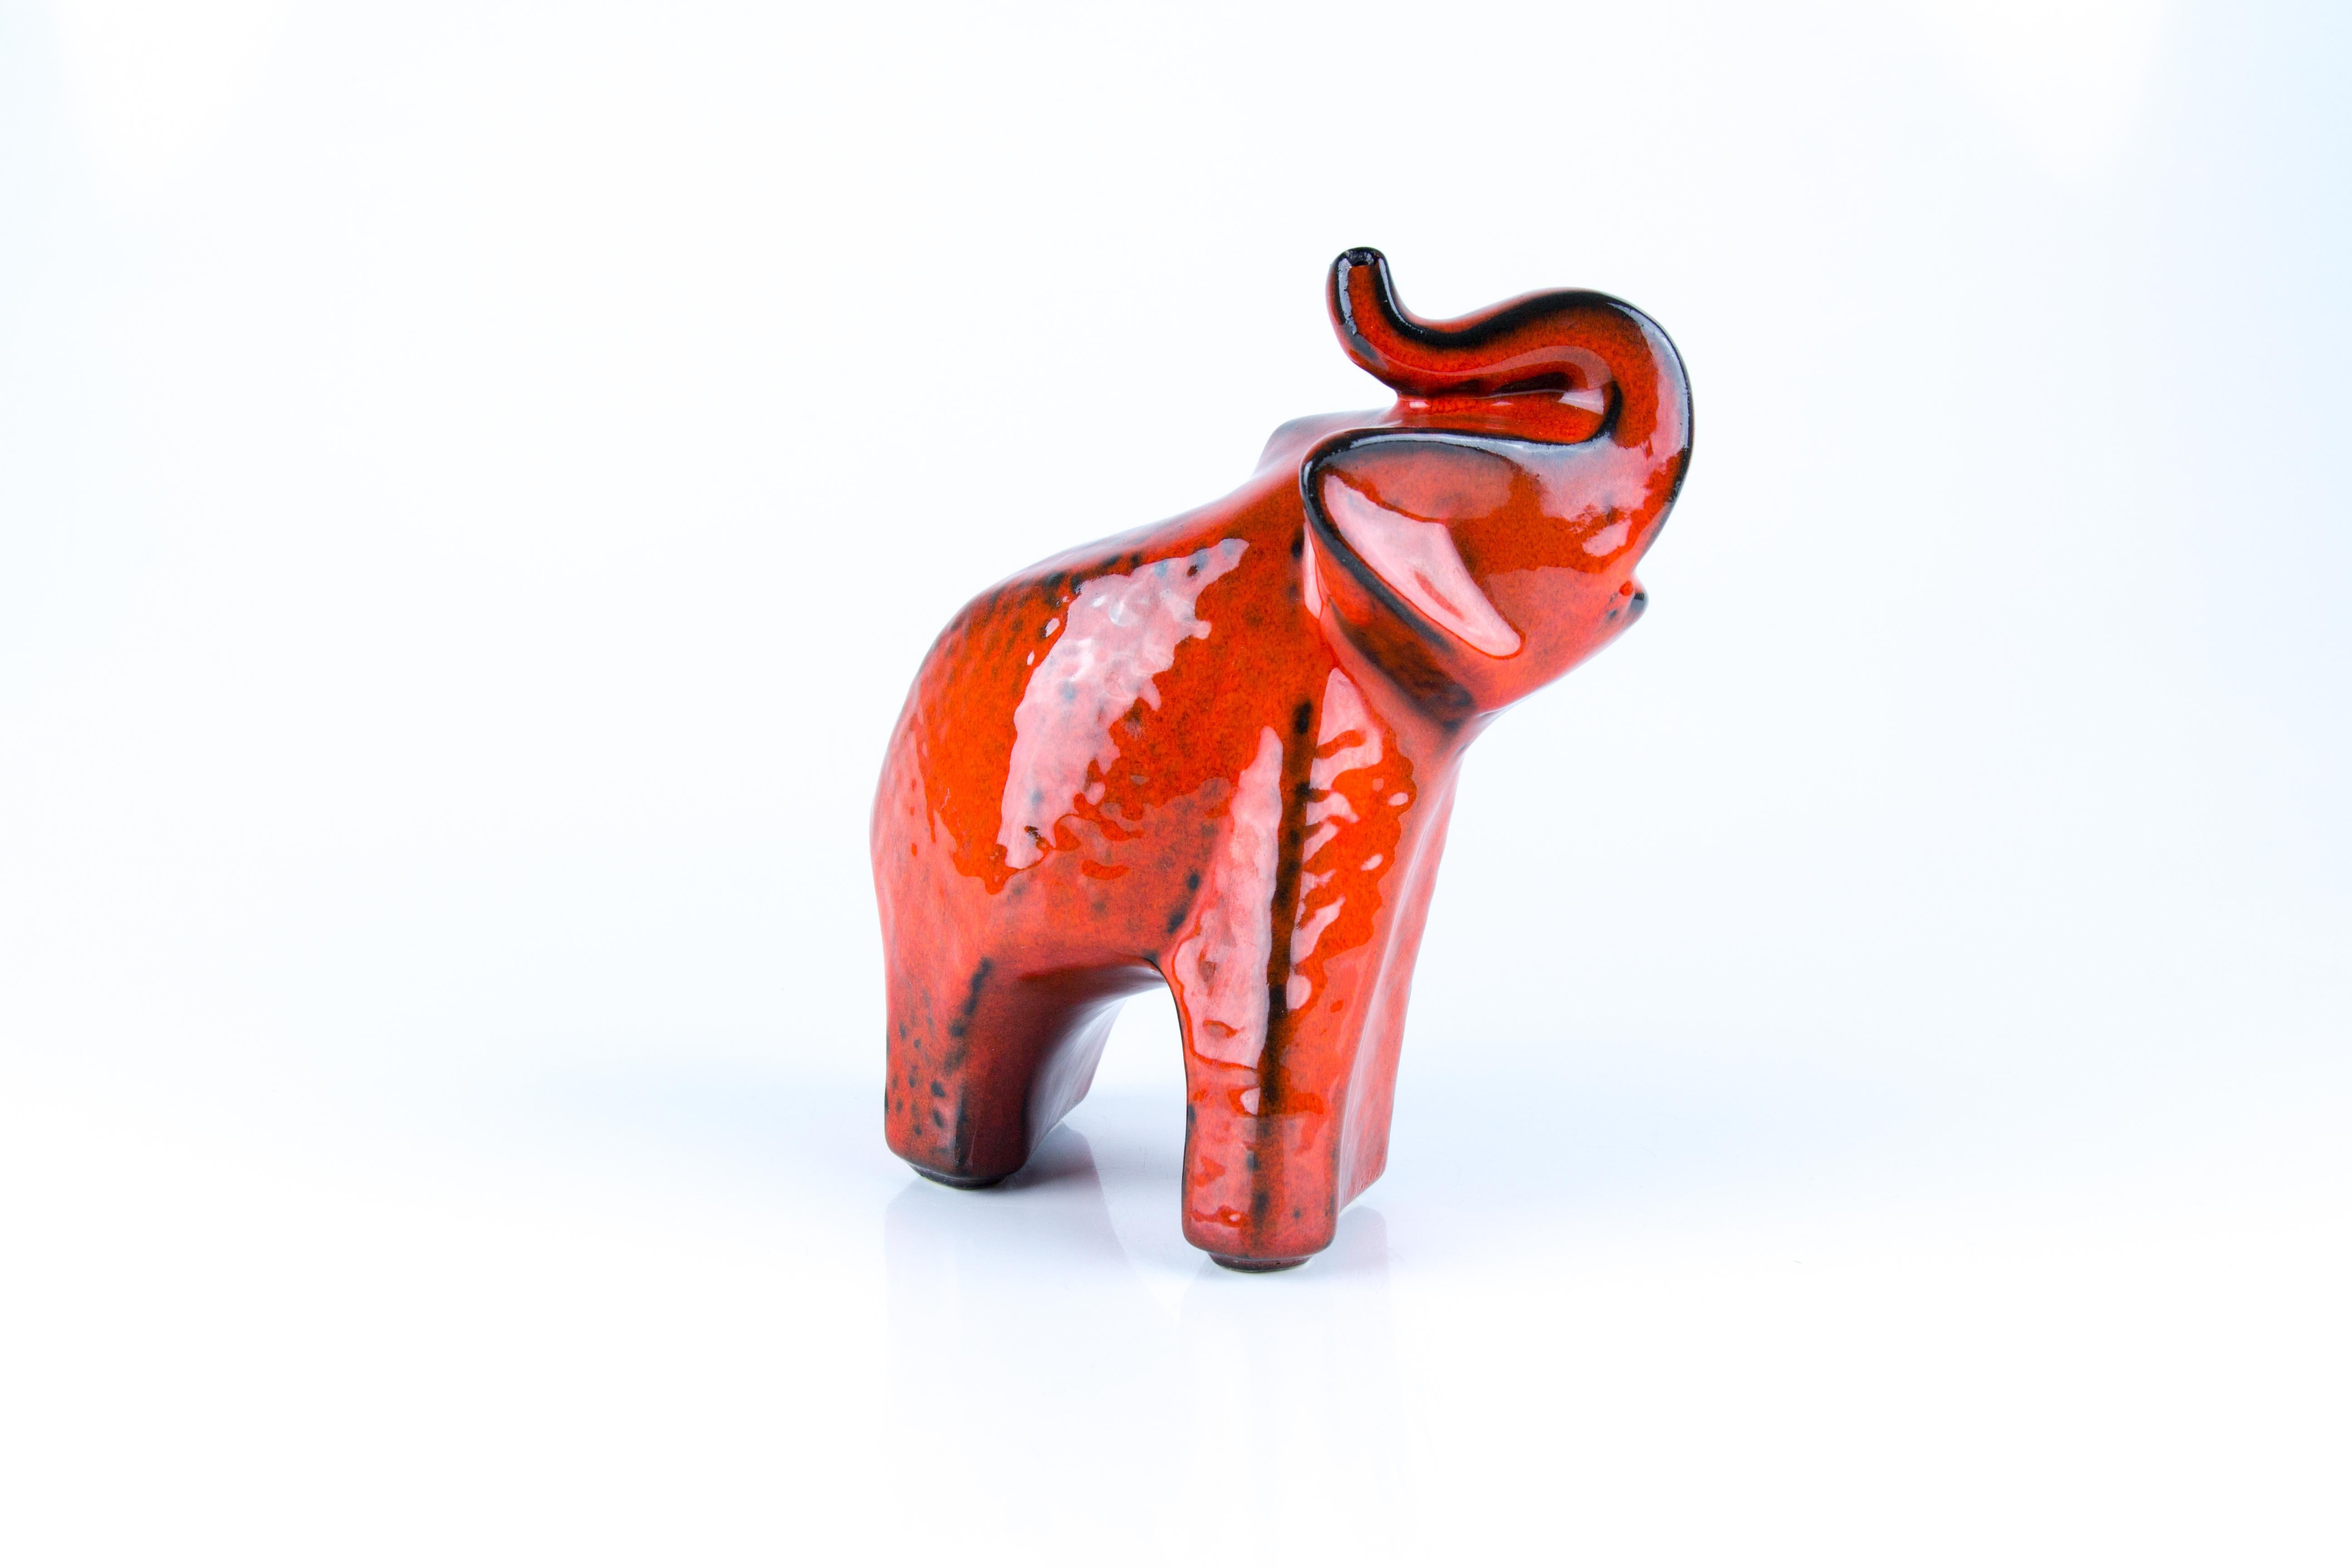 Mid-20th Century West German Pottery Red Glazed Ceramic Elephant Figurine by Bay Keramik, 1960s